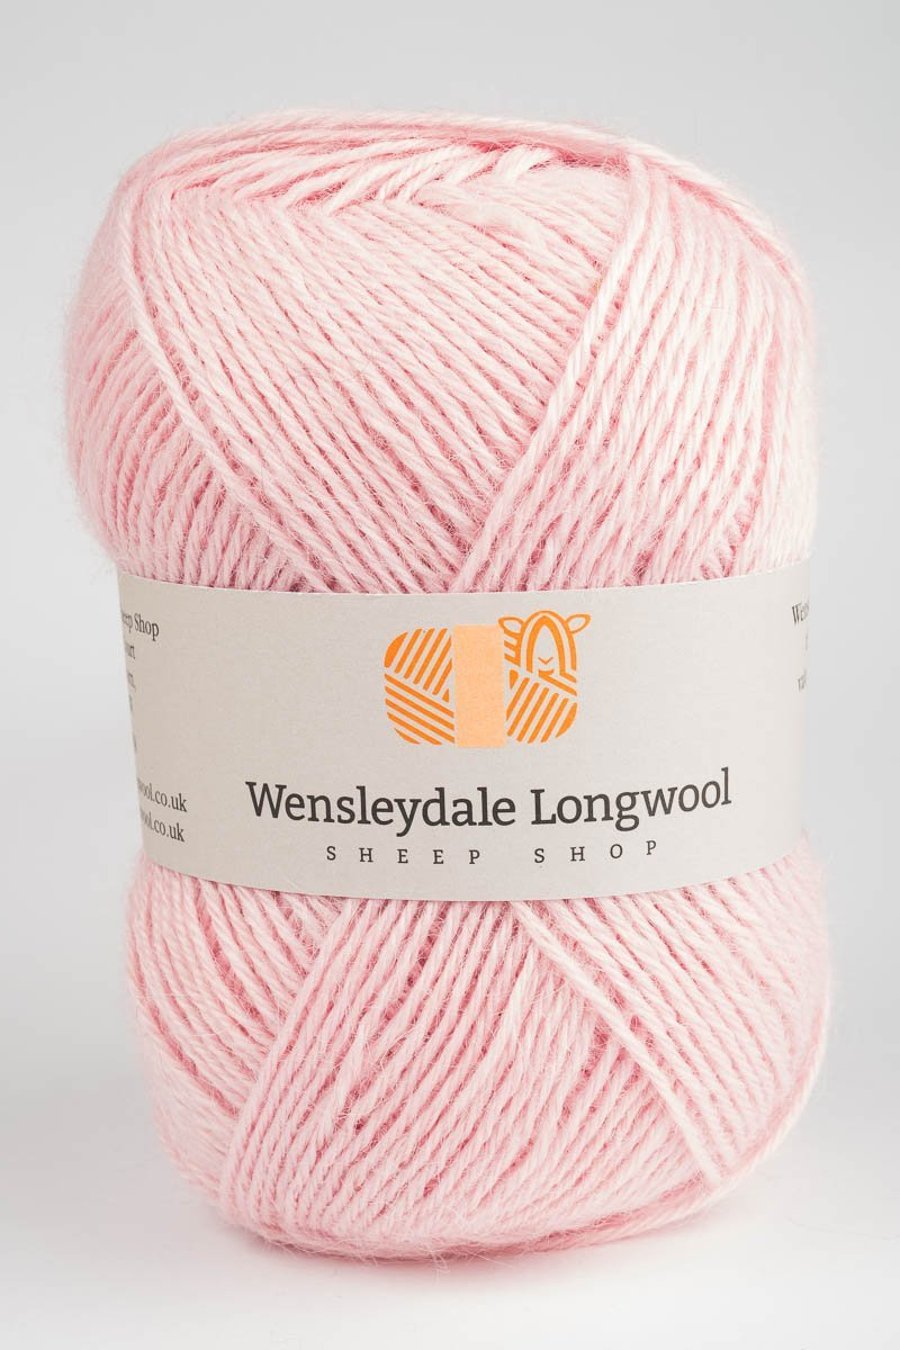 Wensleydale Longwool Double Knit Yarn - Marshmallow Pink